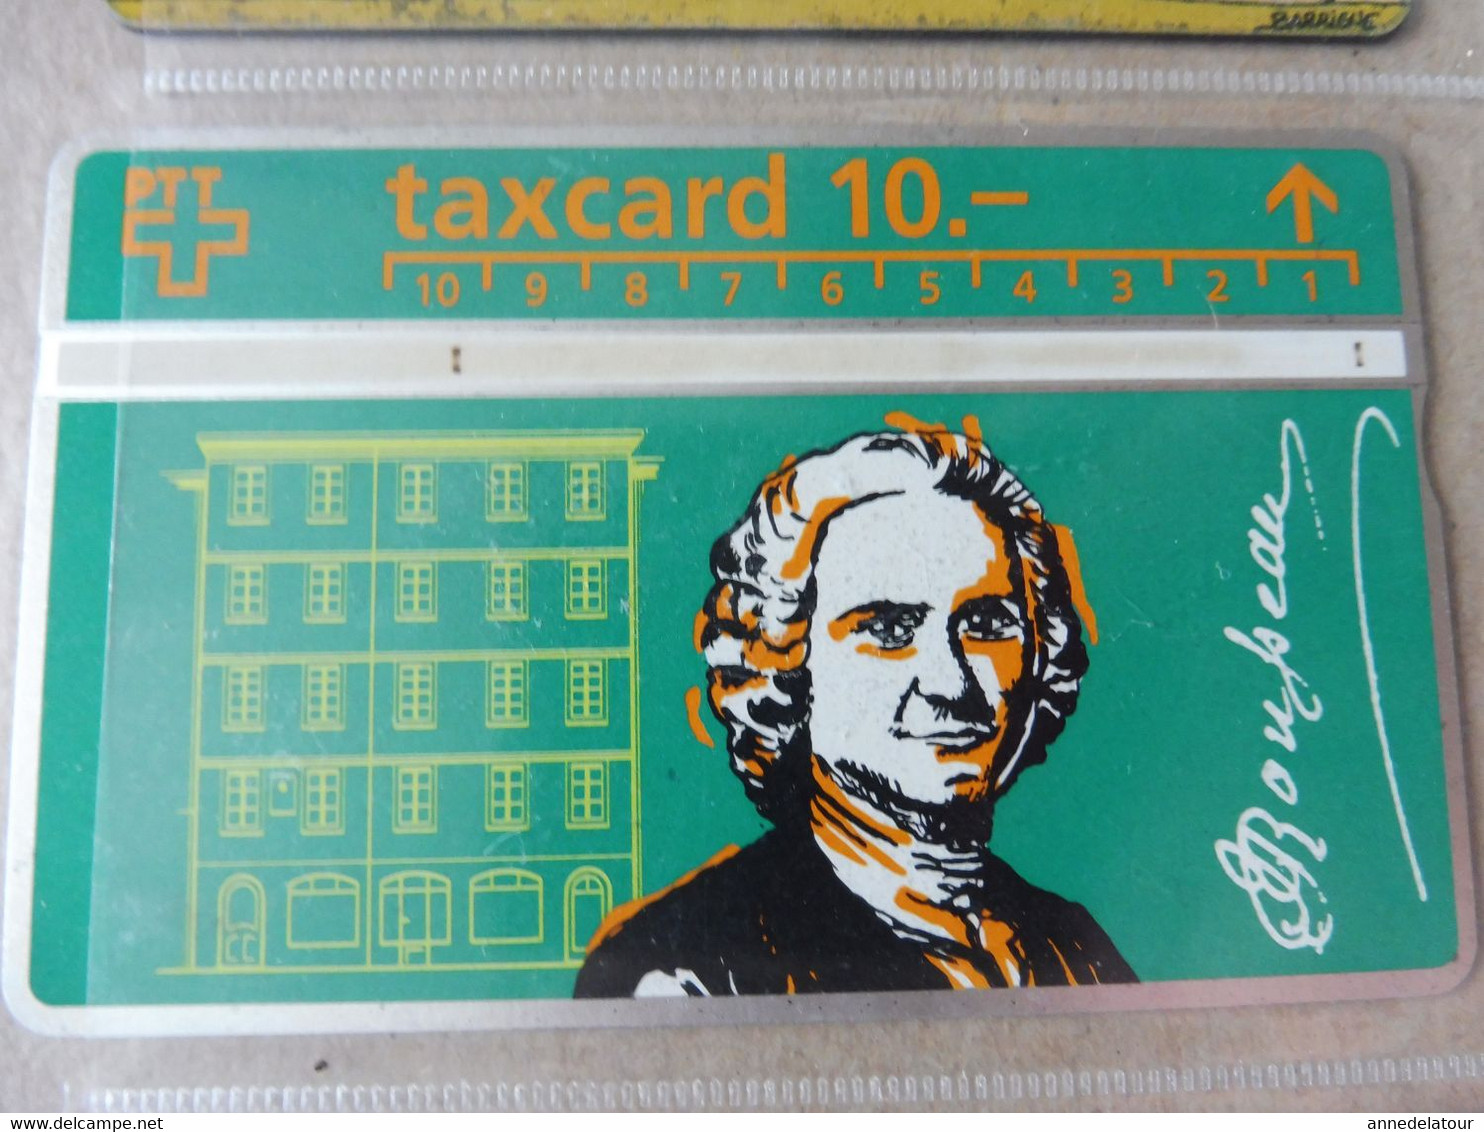 10 télécartes (cartes téléphoniques)  TAXCARD  ,   origine Suisse